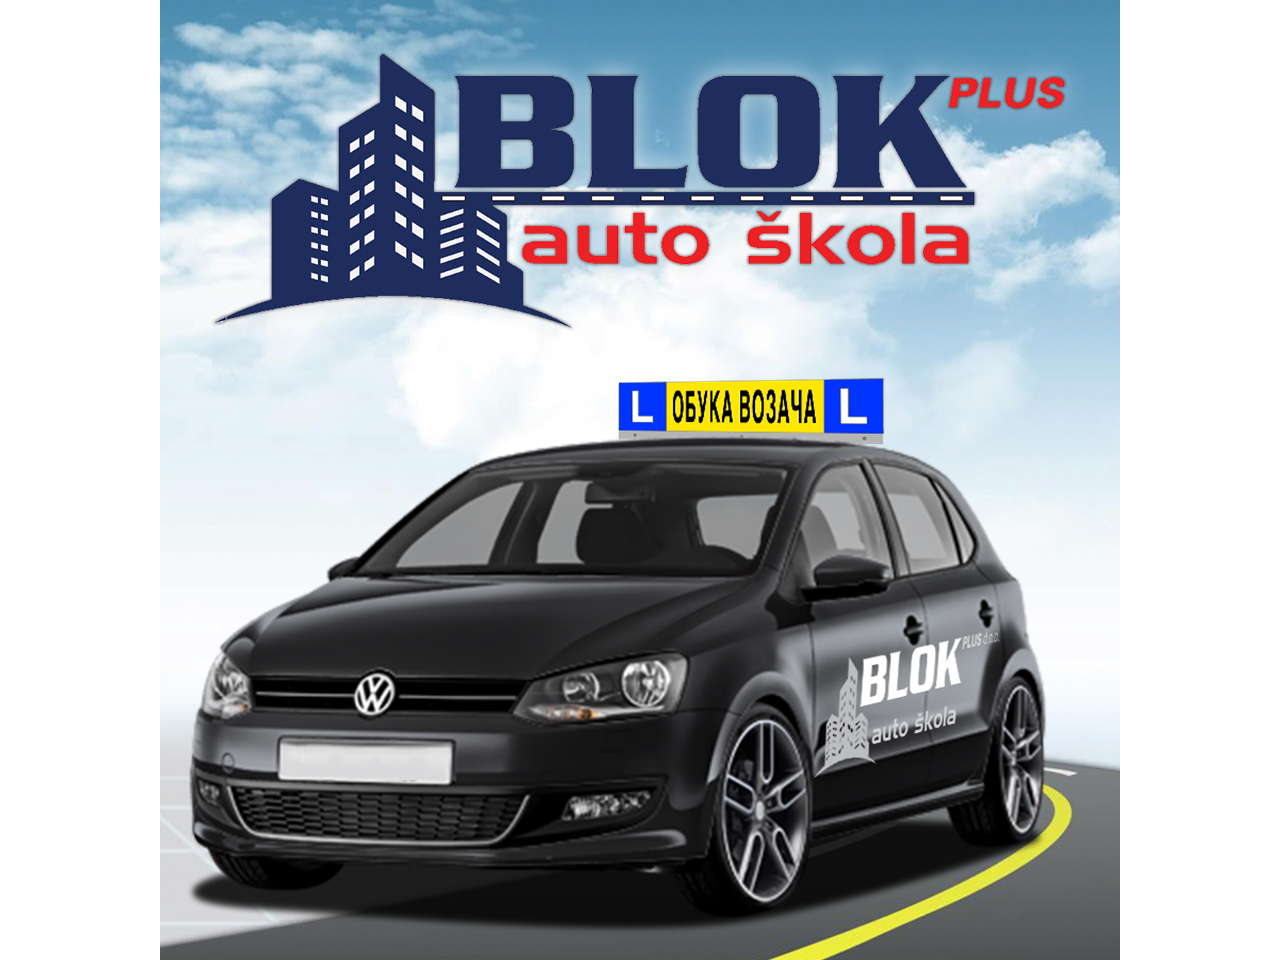 AUTO ŠKOLA BLOK PLUS Auto škole Beograd - Slika 2